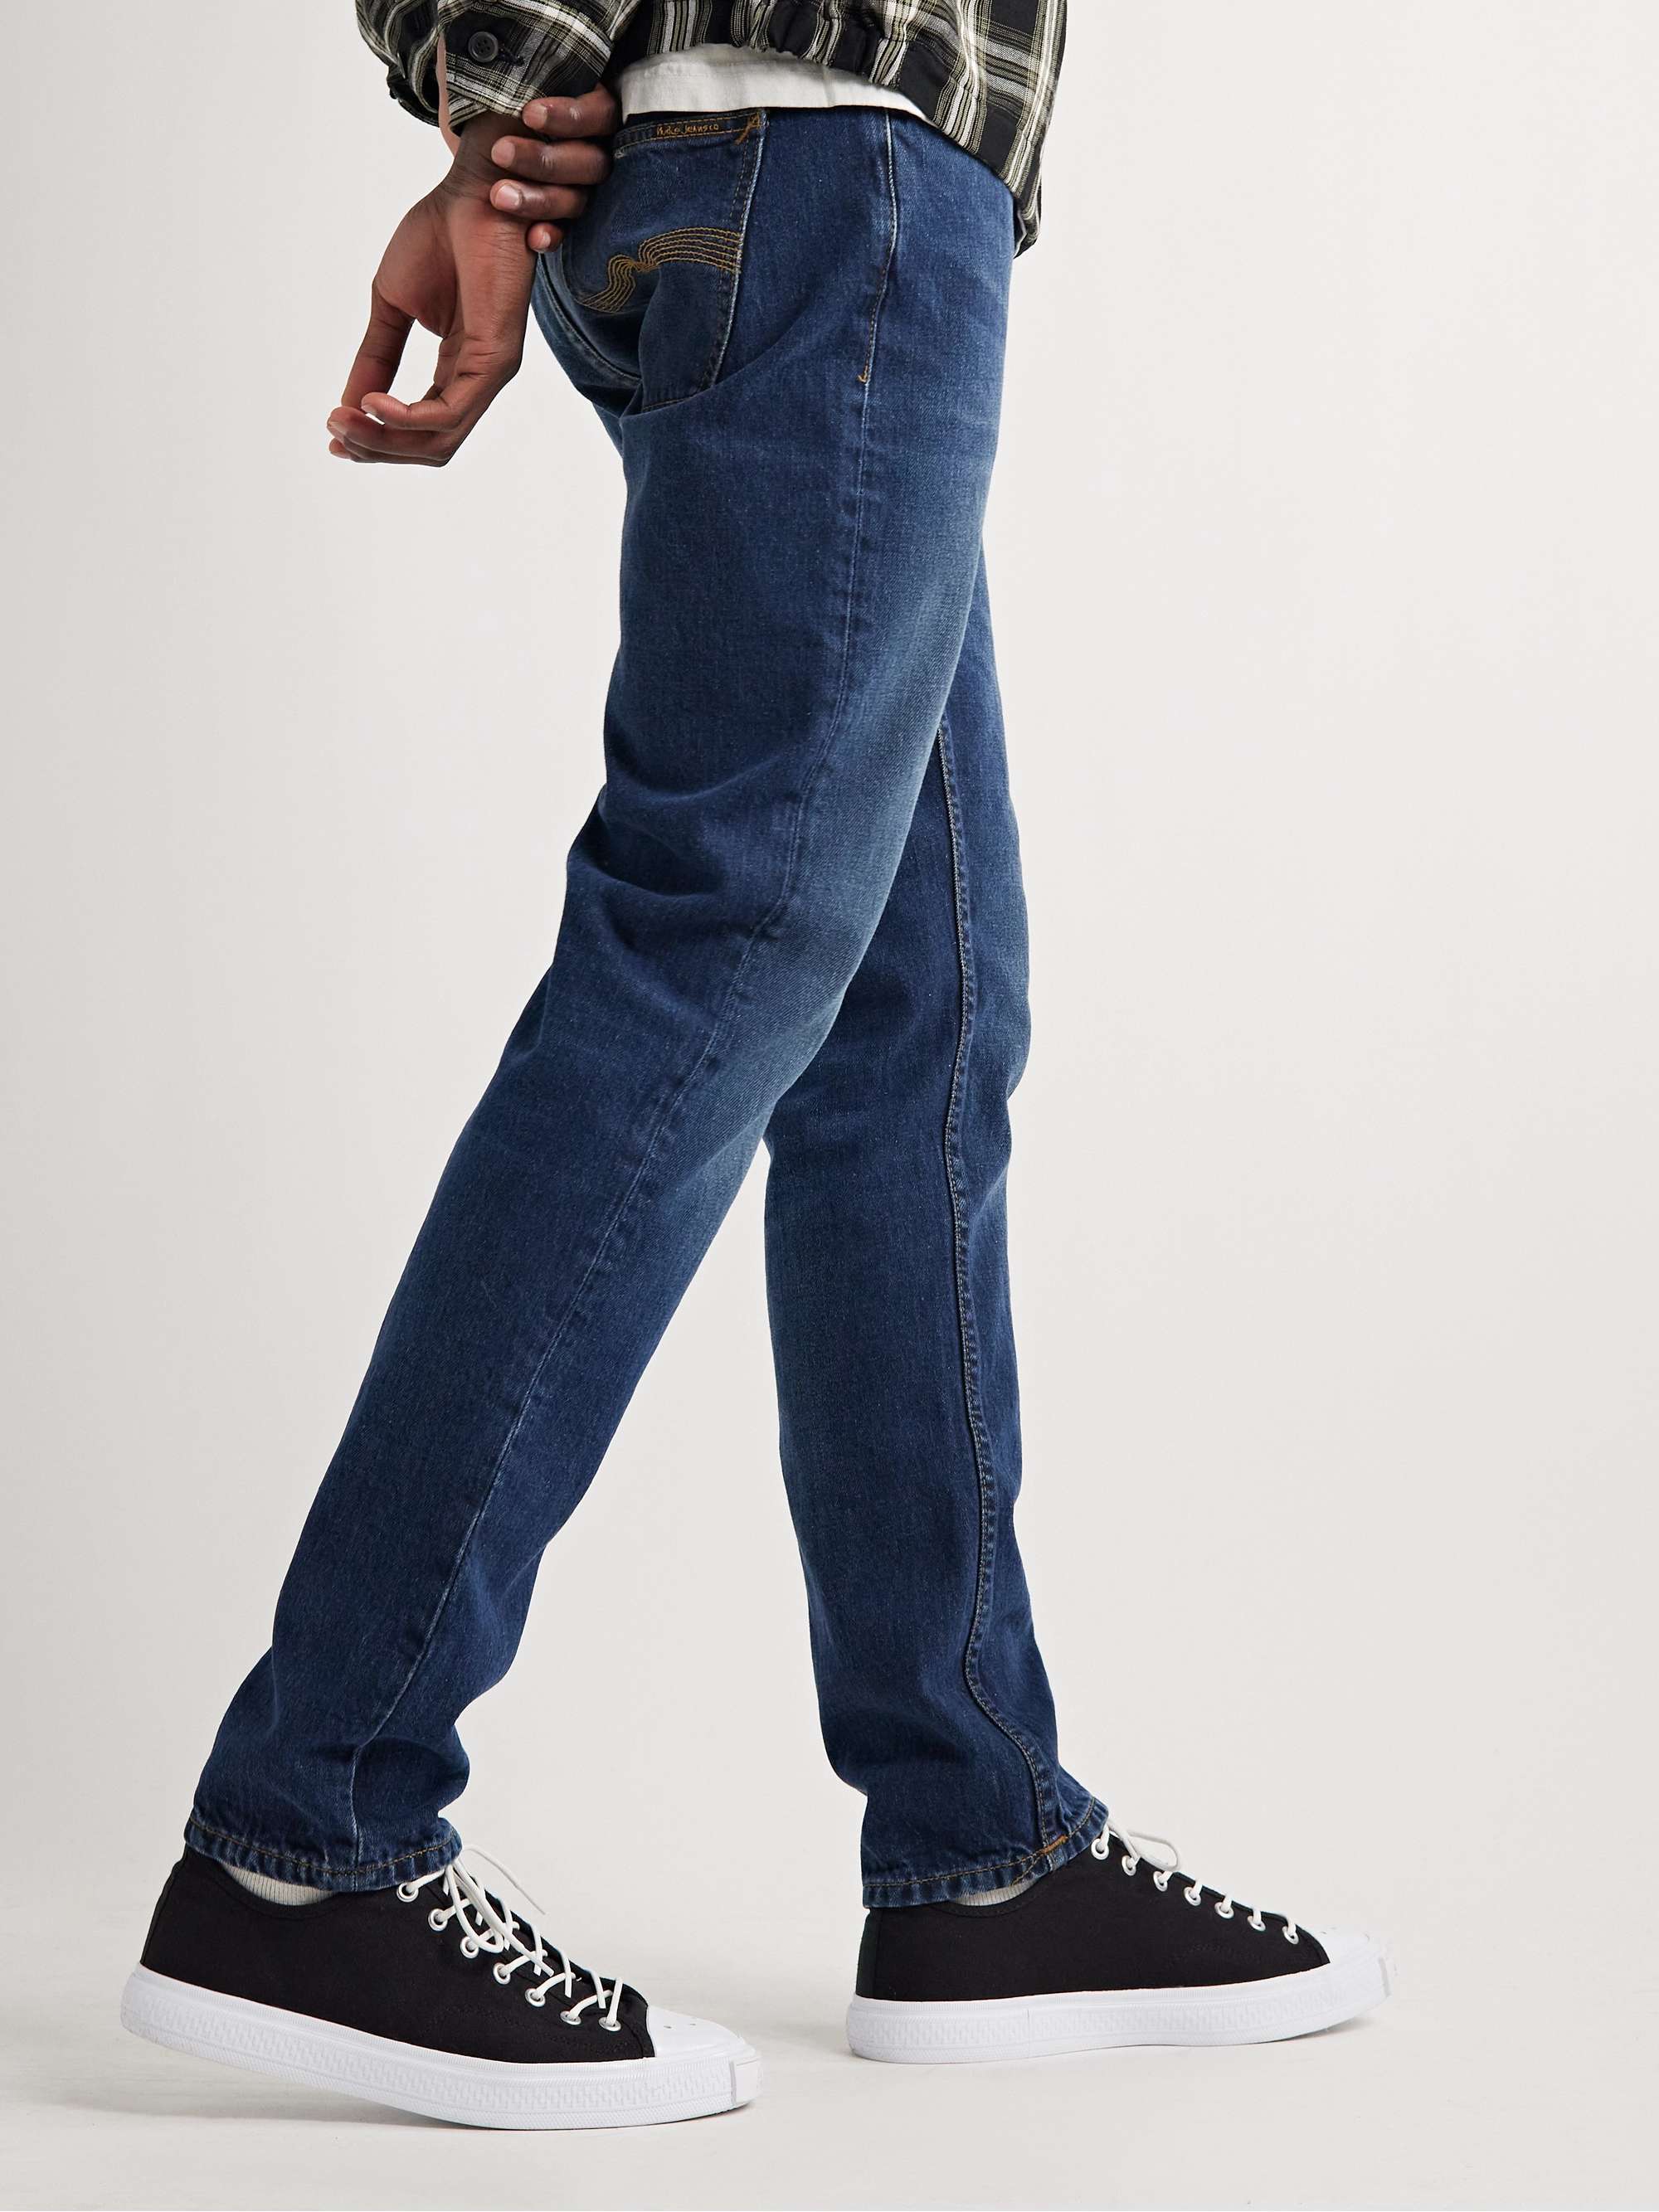 NUDIE JEANS Lean Dean Slim-Fit Jeans | MR PORTER